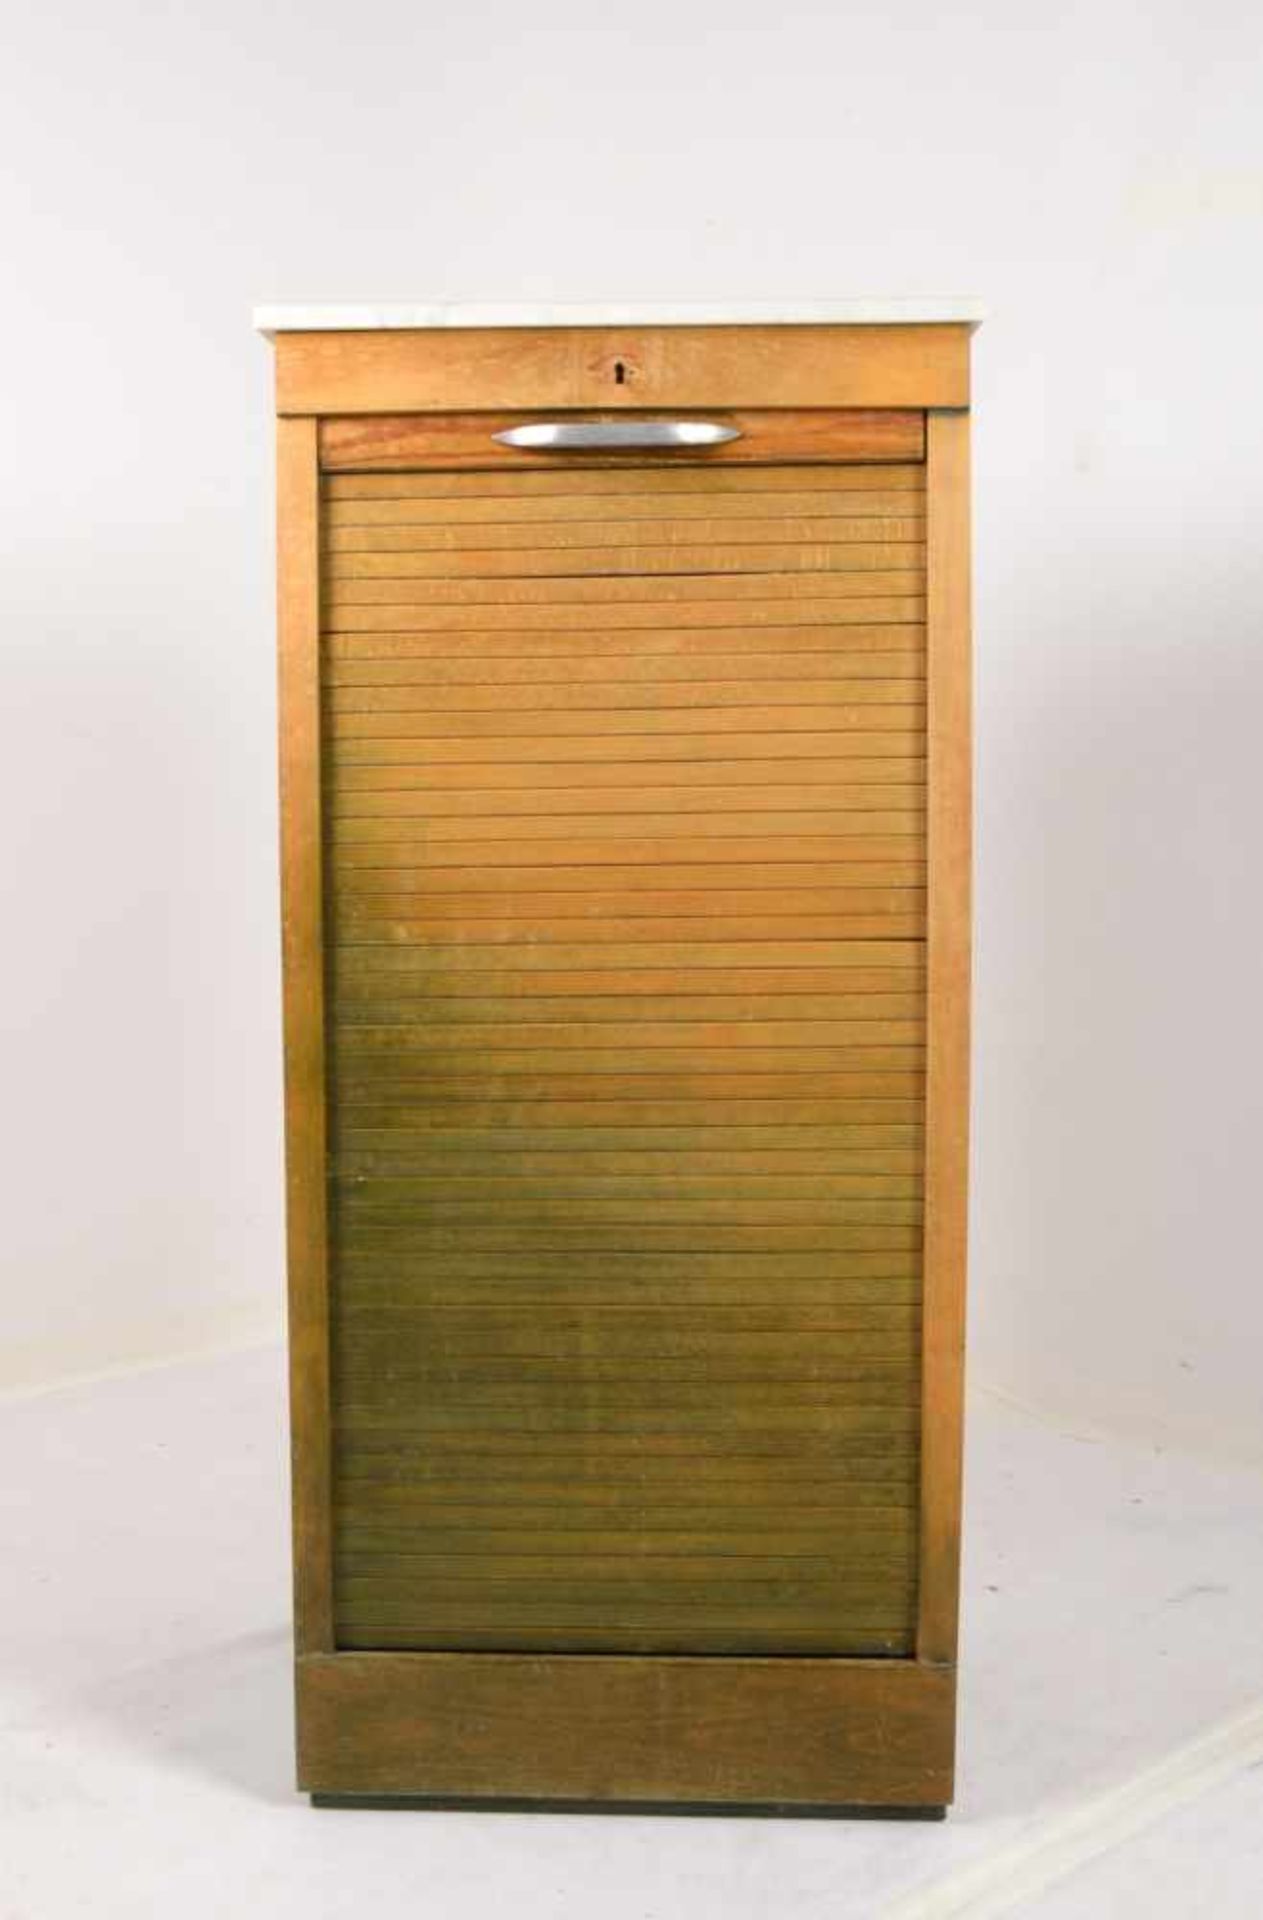 Rollschrank, 2-schübig, mit aufgelegter Marmorplatte; Maße 114 x 50 x 41 cm